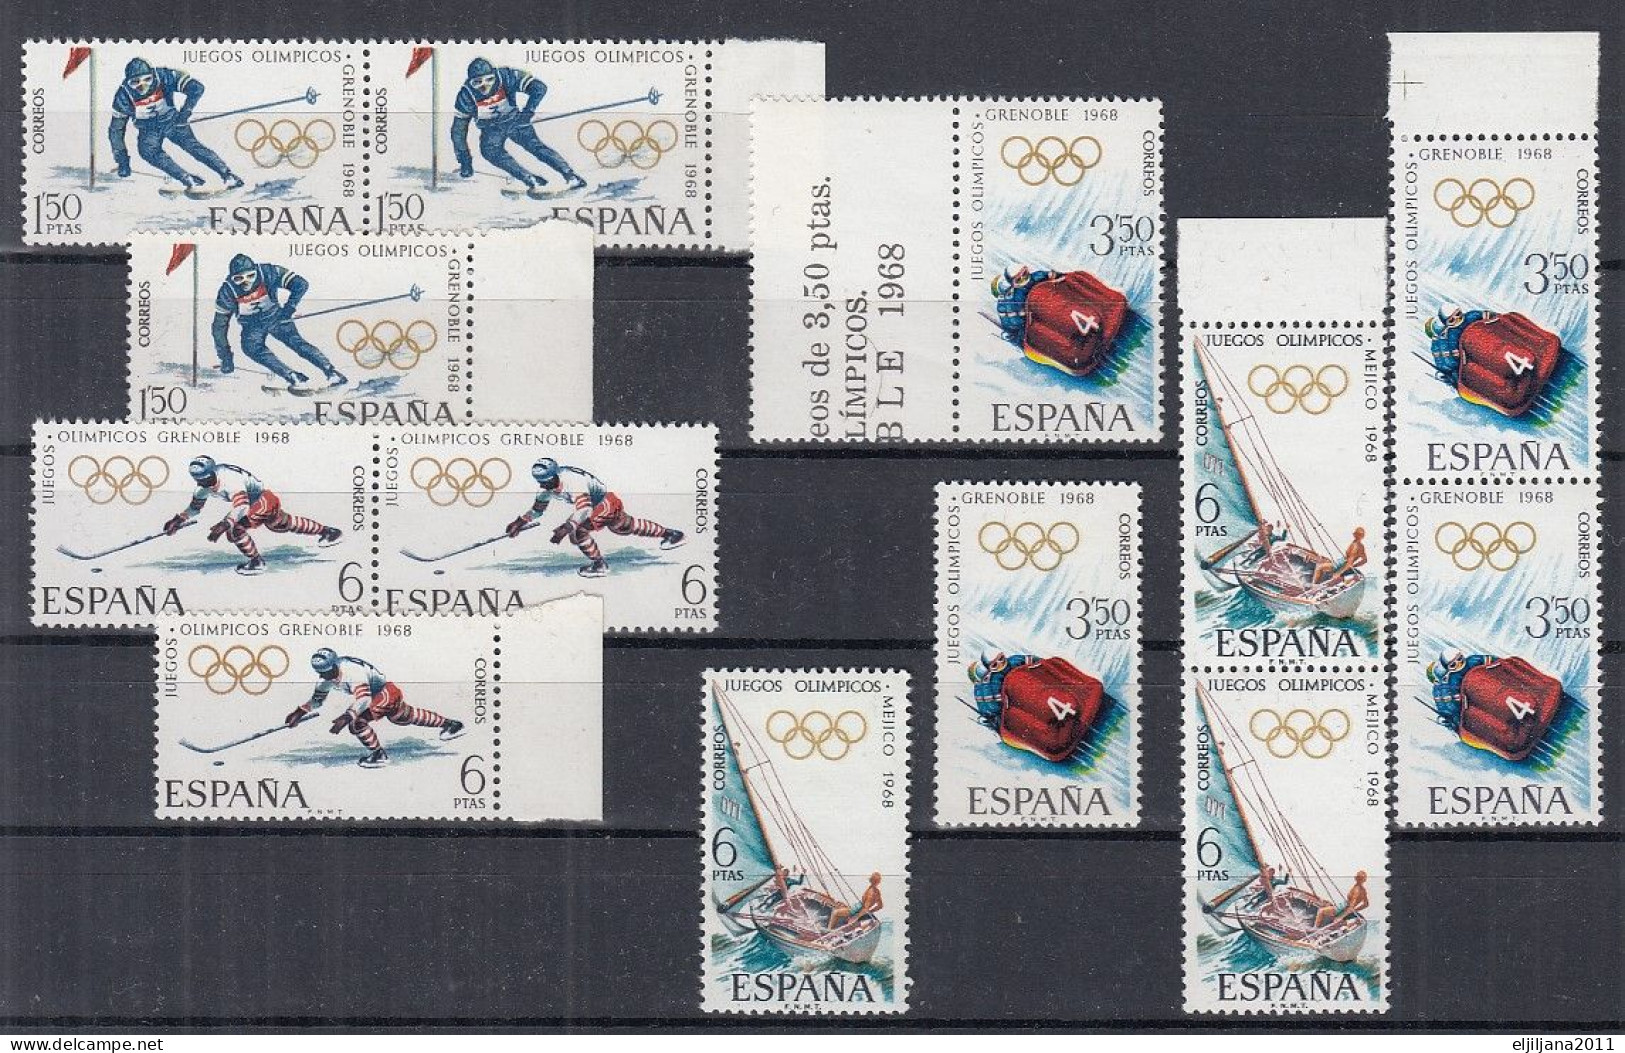 ⁕ SPAIN / ESPANA 1968 ⁕ Olympic Games Mi.1735-1737 & Mi.1780 ⁕ 13v MNH - Ungebraucht